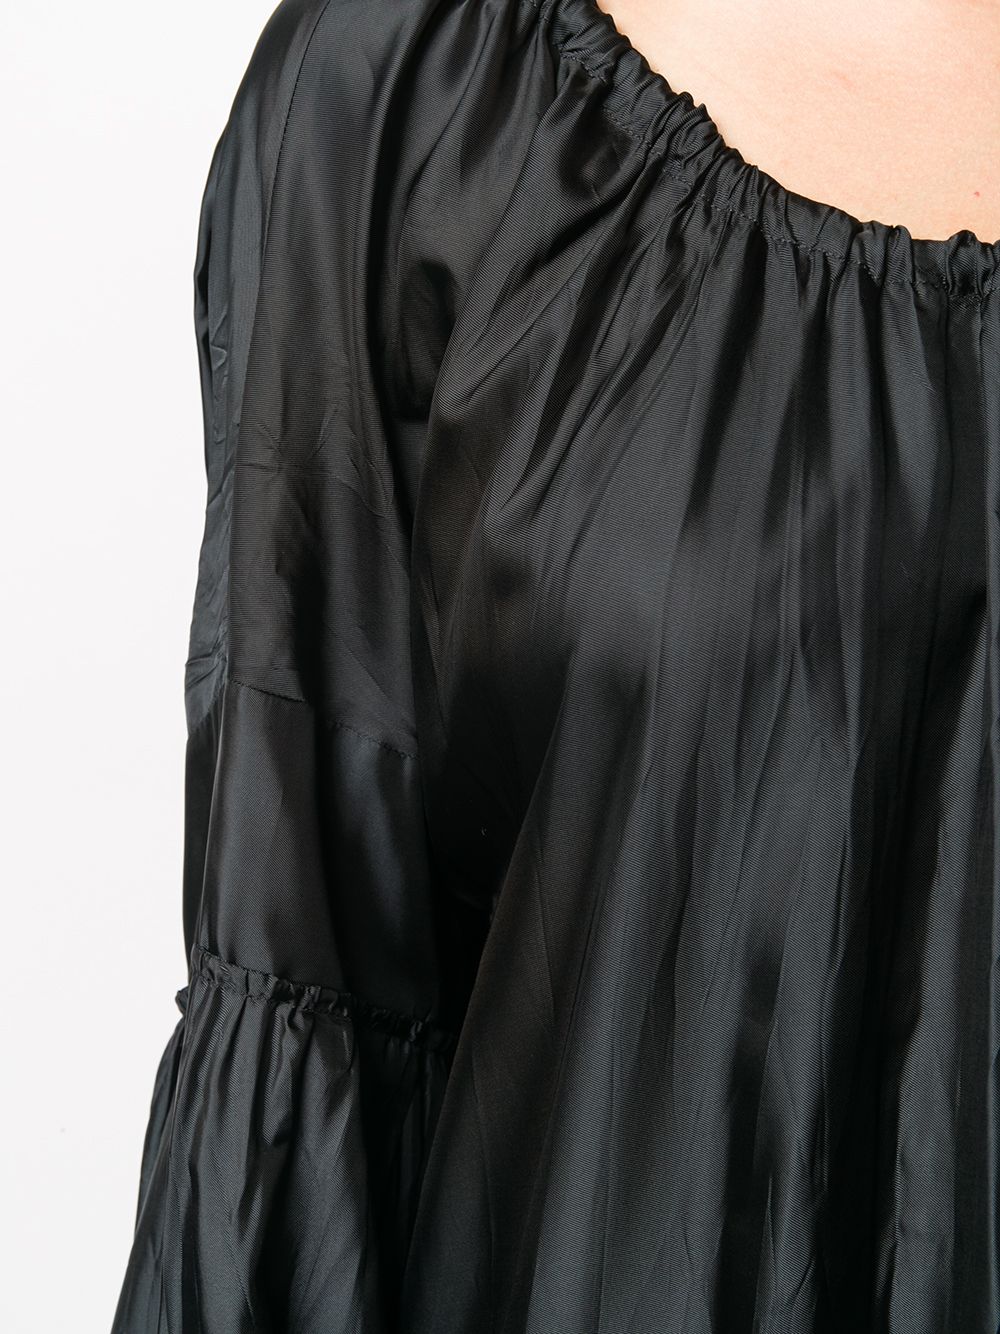 фото Jil sander расклешенное платье миди асимметричного кроя